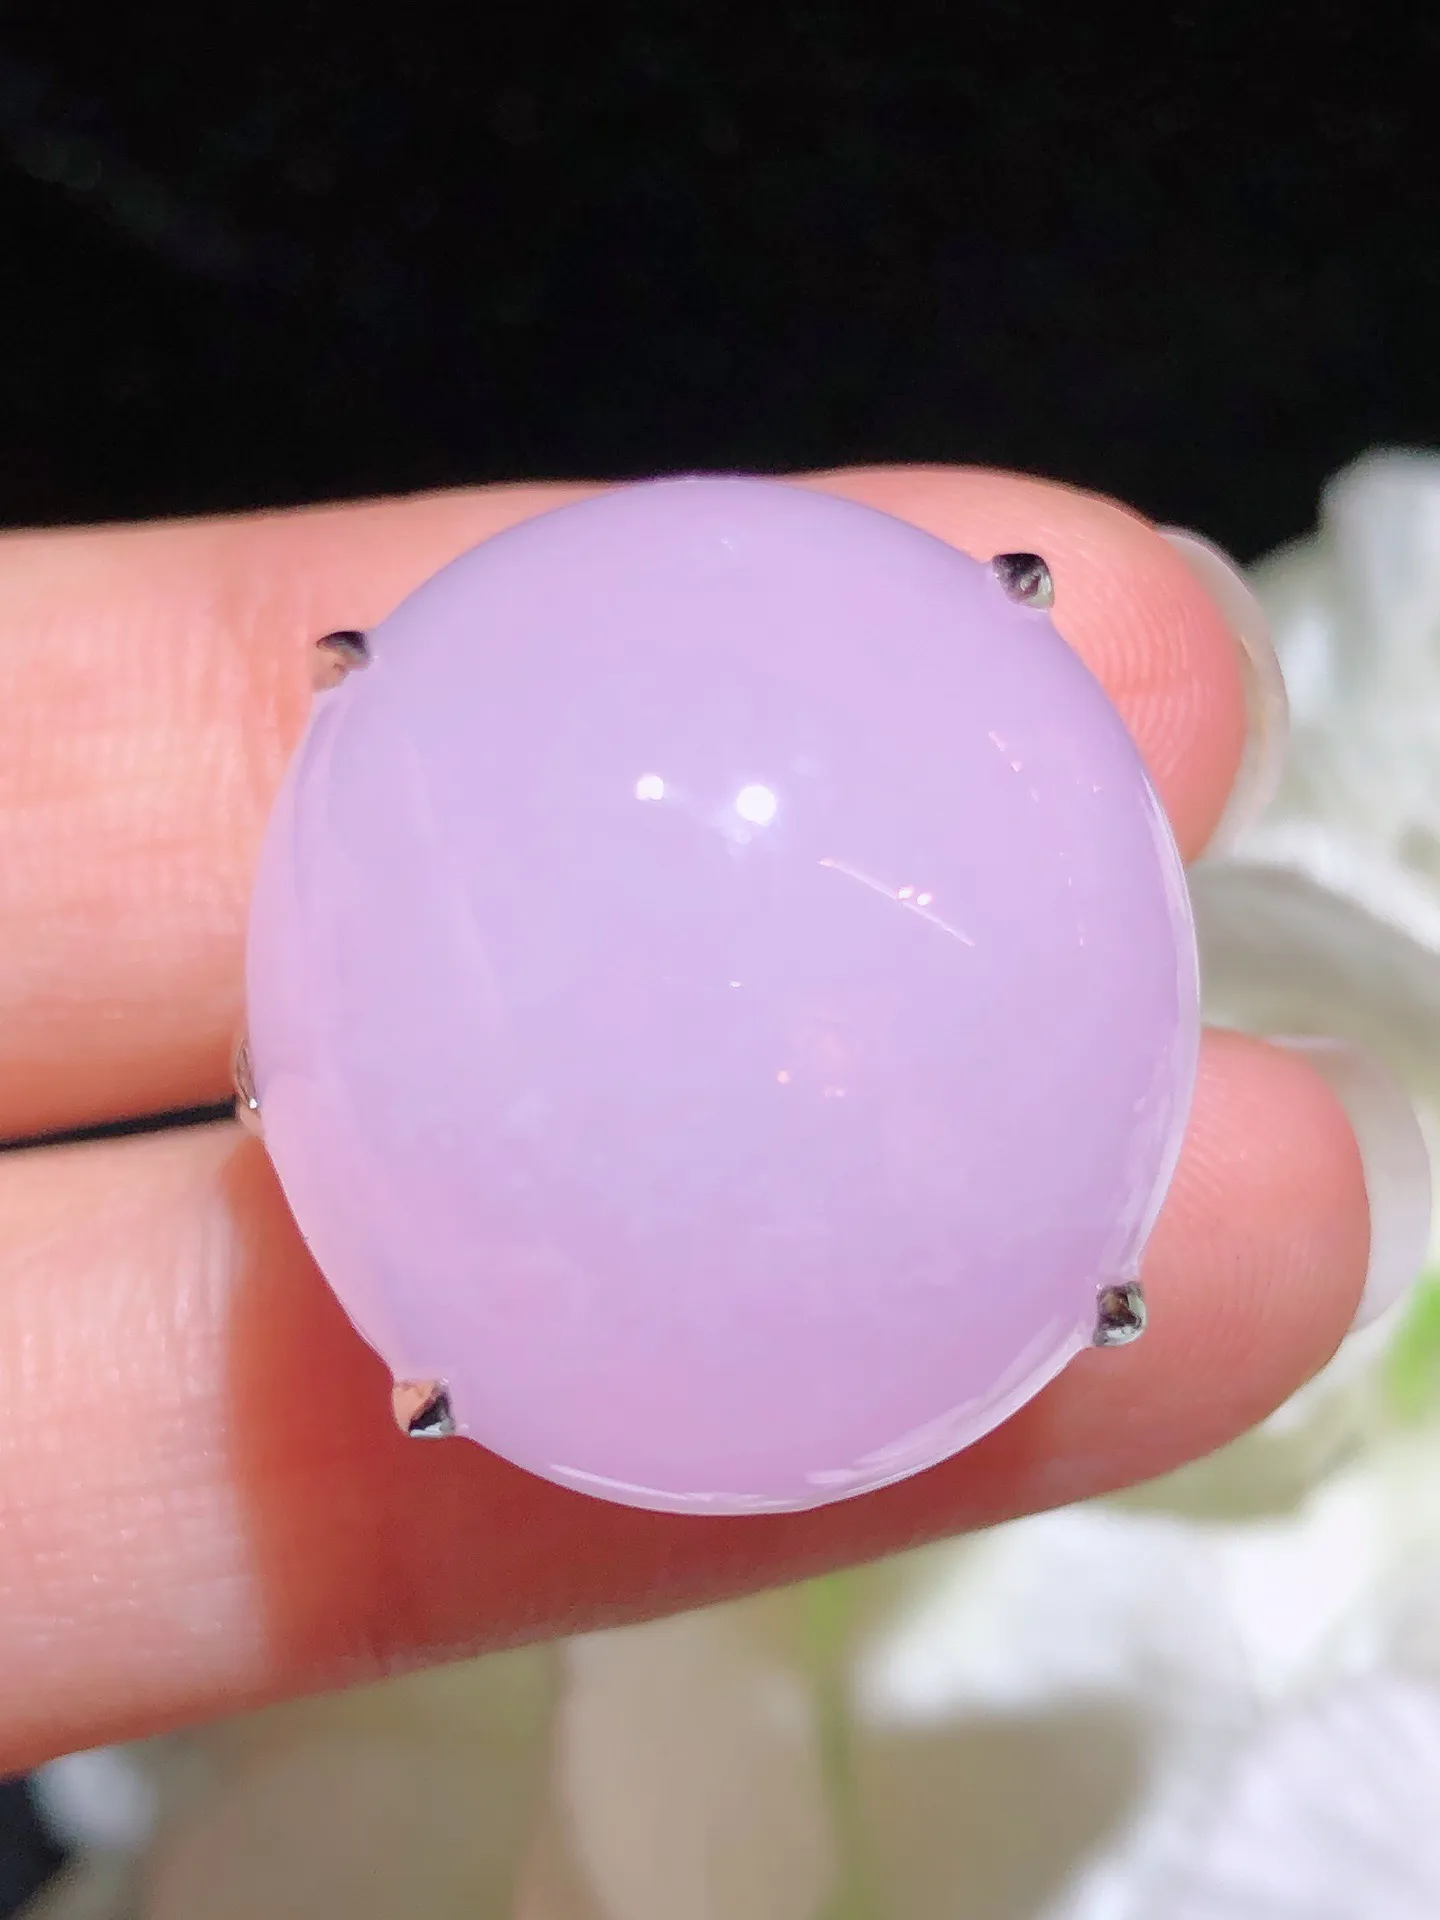 翡翠紫罗兰蛋面戒指 雕工精细 颜色鲜艳 饱满圆润